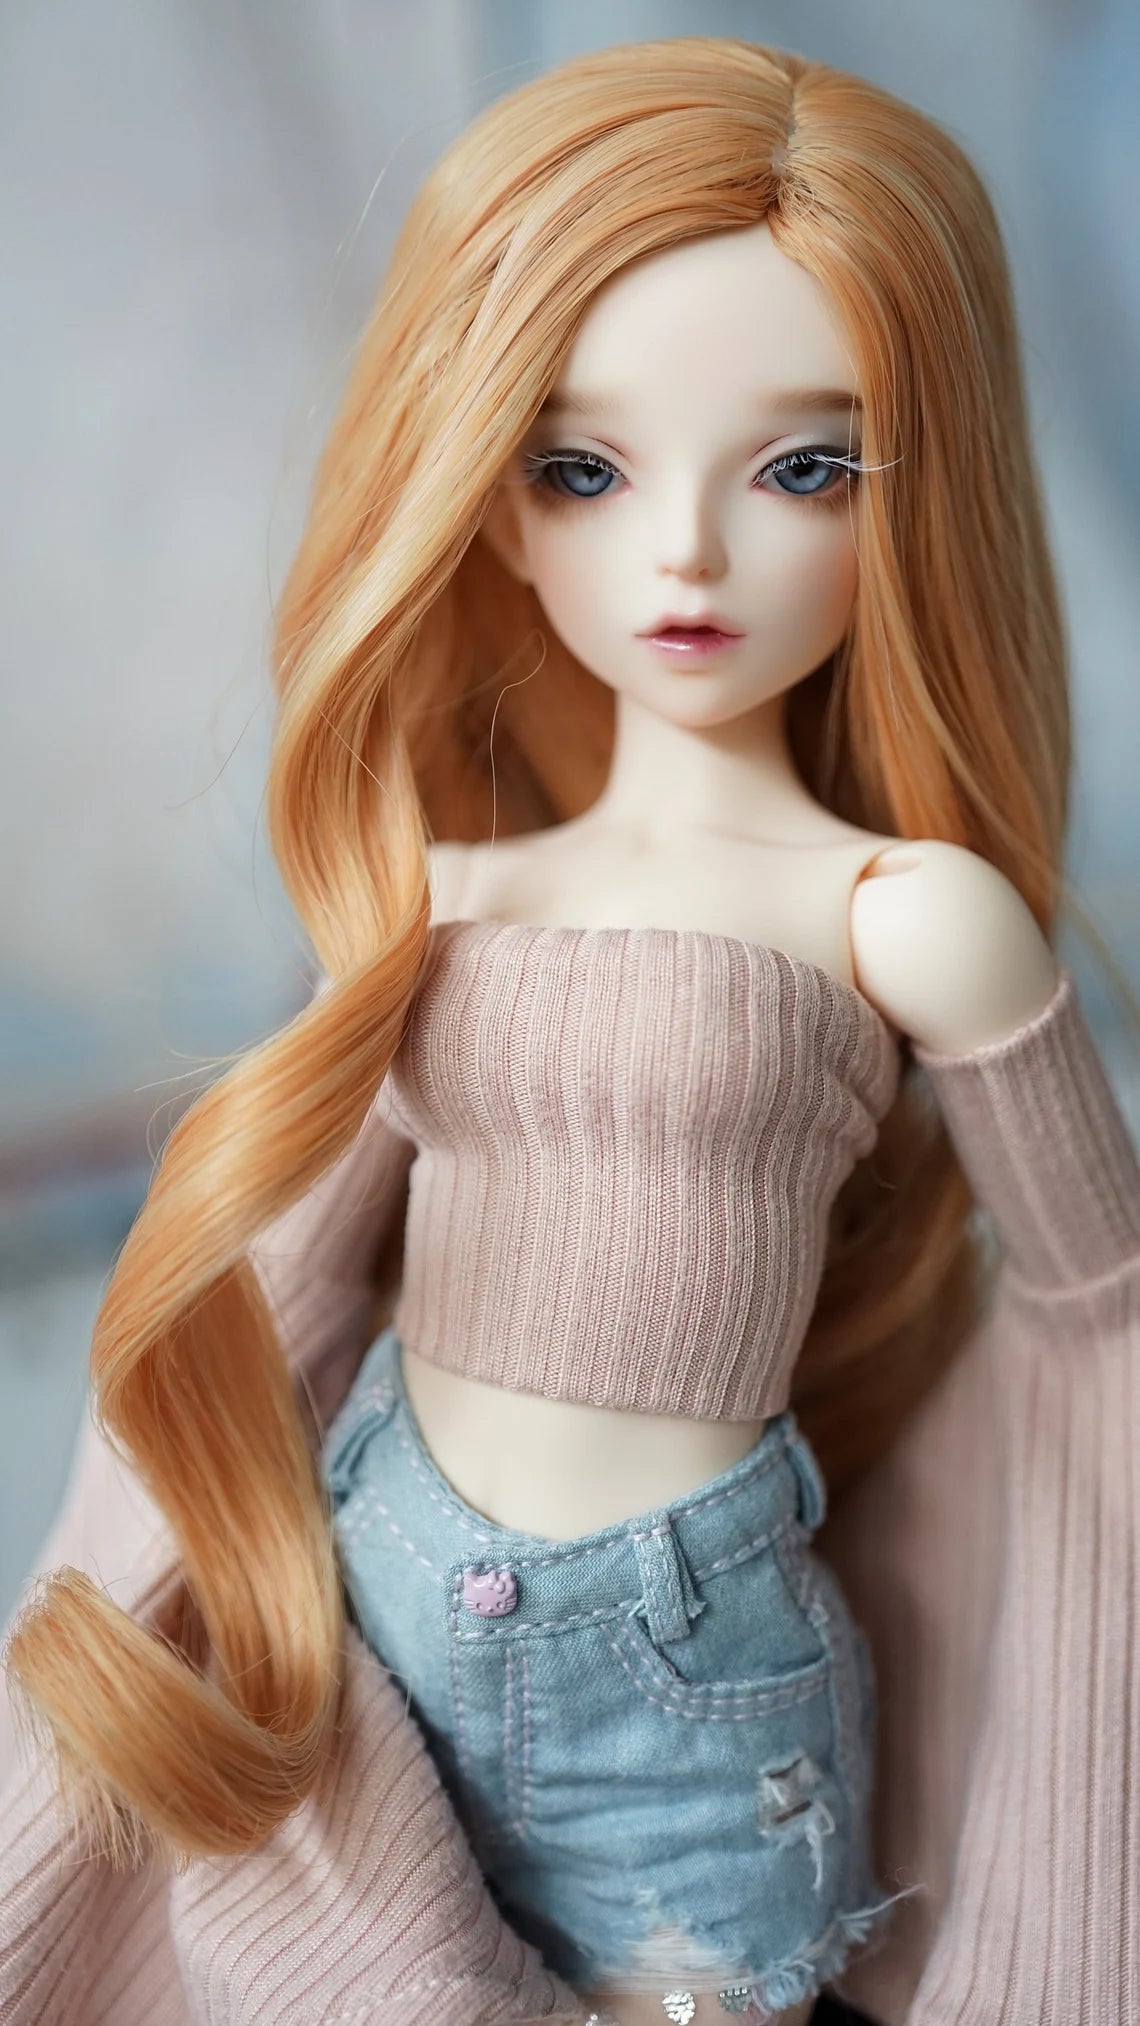 Custom doll Wig for Minifee 1/4 BJD Dolls- "TAN CAPS" 6-7" head size of Bjd, msd, Boneka ,Fairyland Minifee dolls